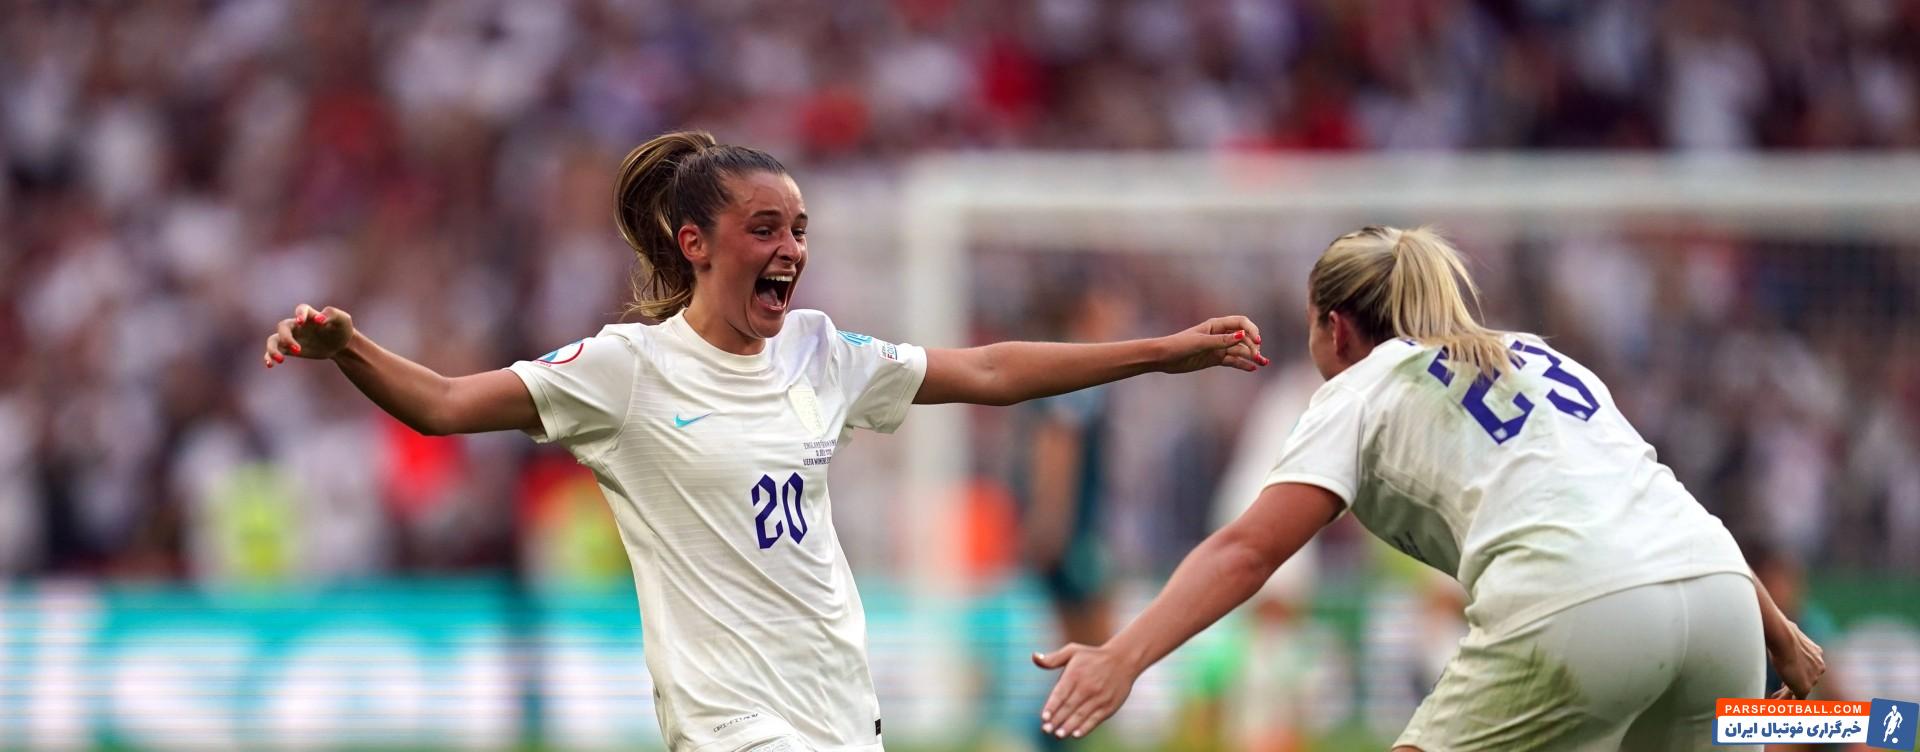 قهرمانی تیم ملی زنان انگلیس در اروپا 